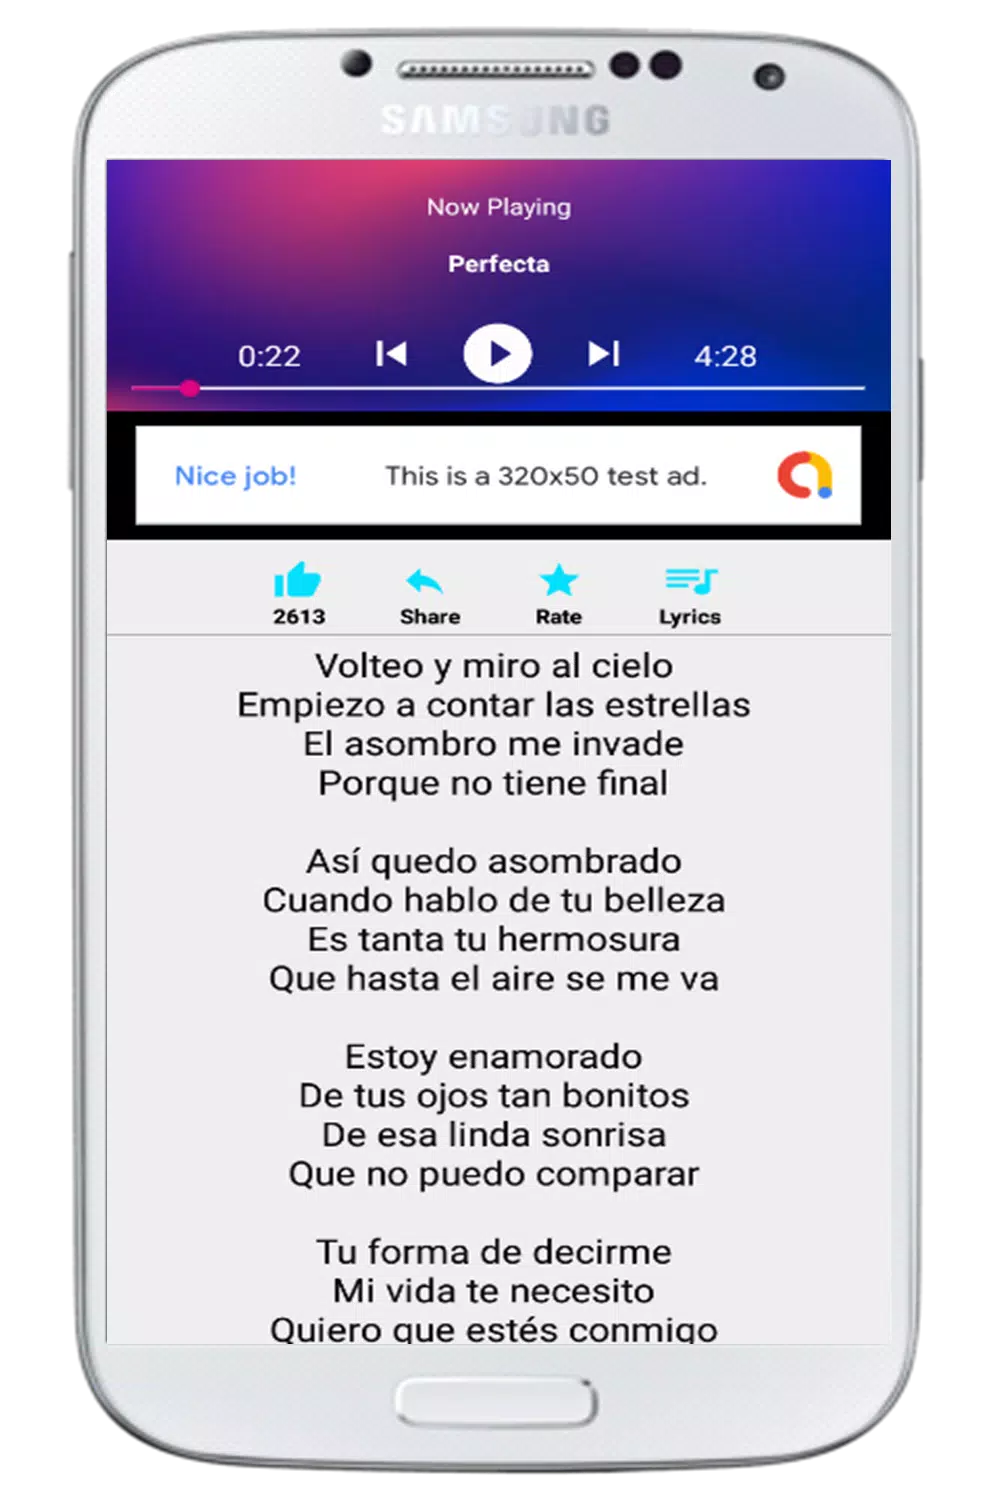 Descarga de APK de Perfecta Banda Los Recoditos Musica Offline para Android